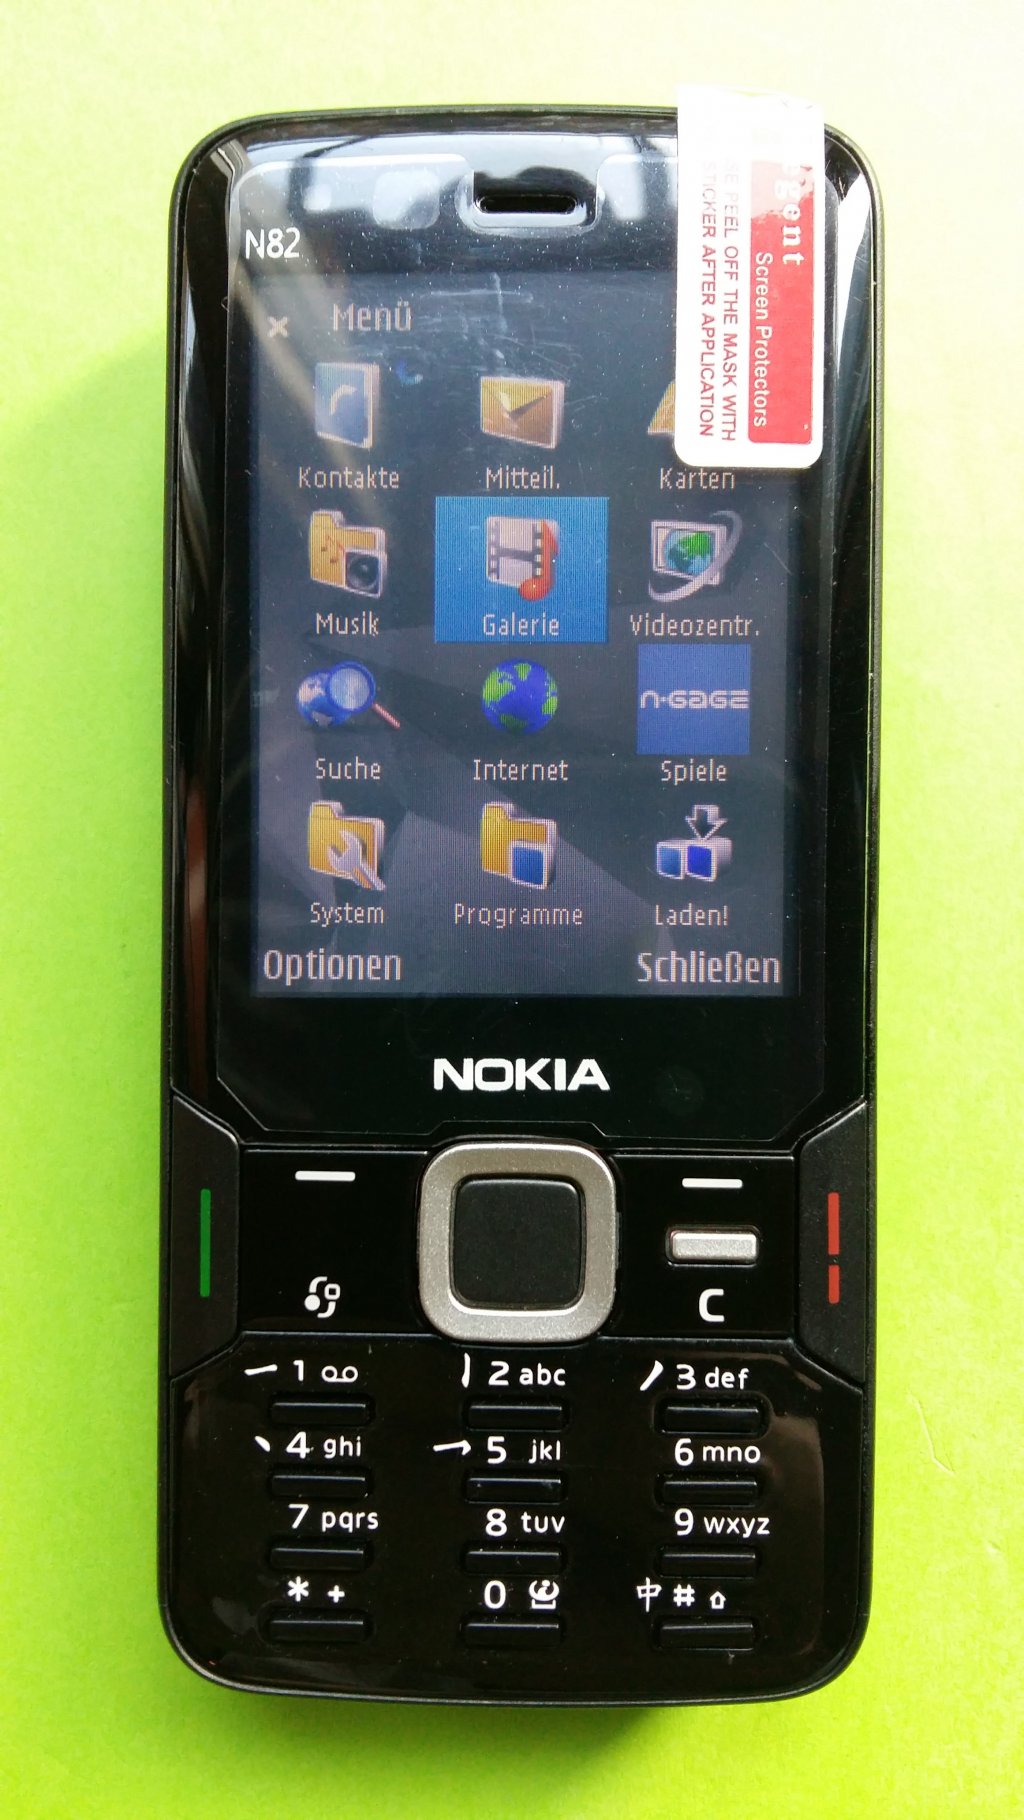 image-7591950-Nokia_N82-1_(1)1.w640.jpg